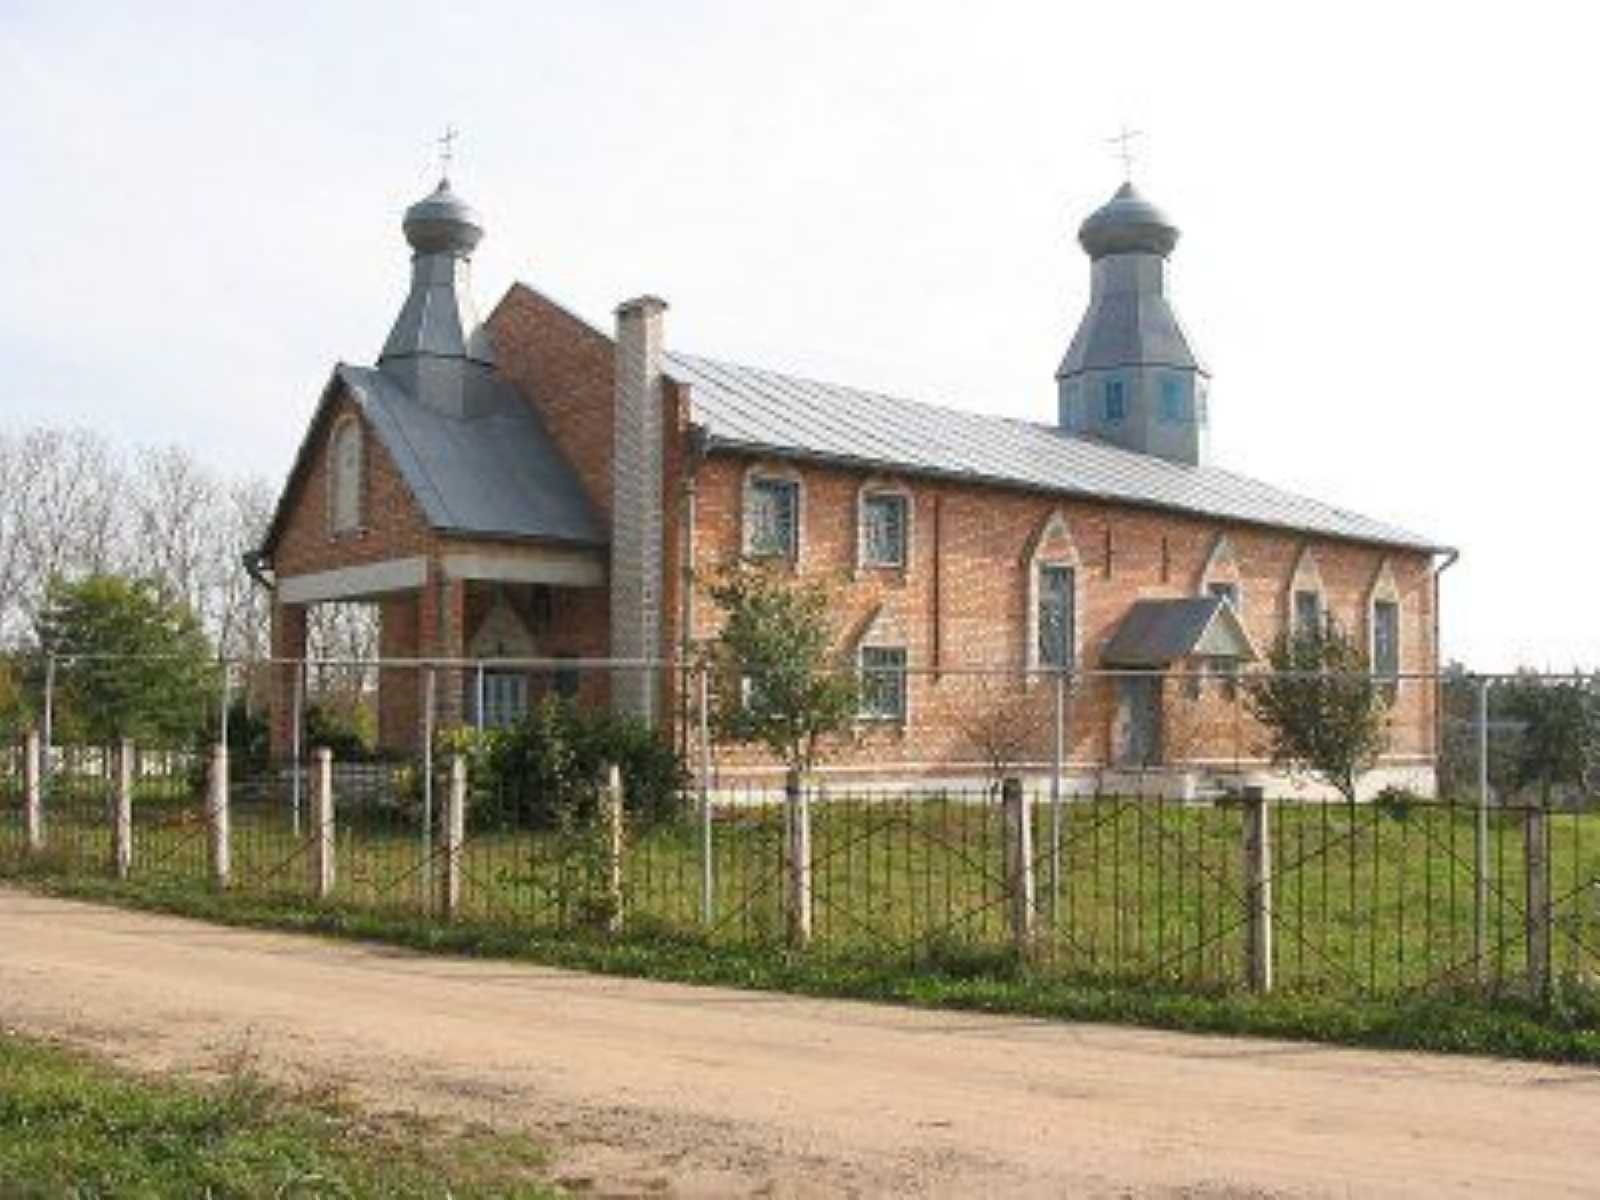 Церковь св. Николая